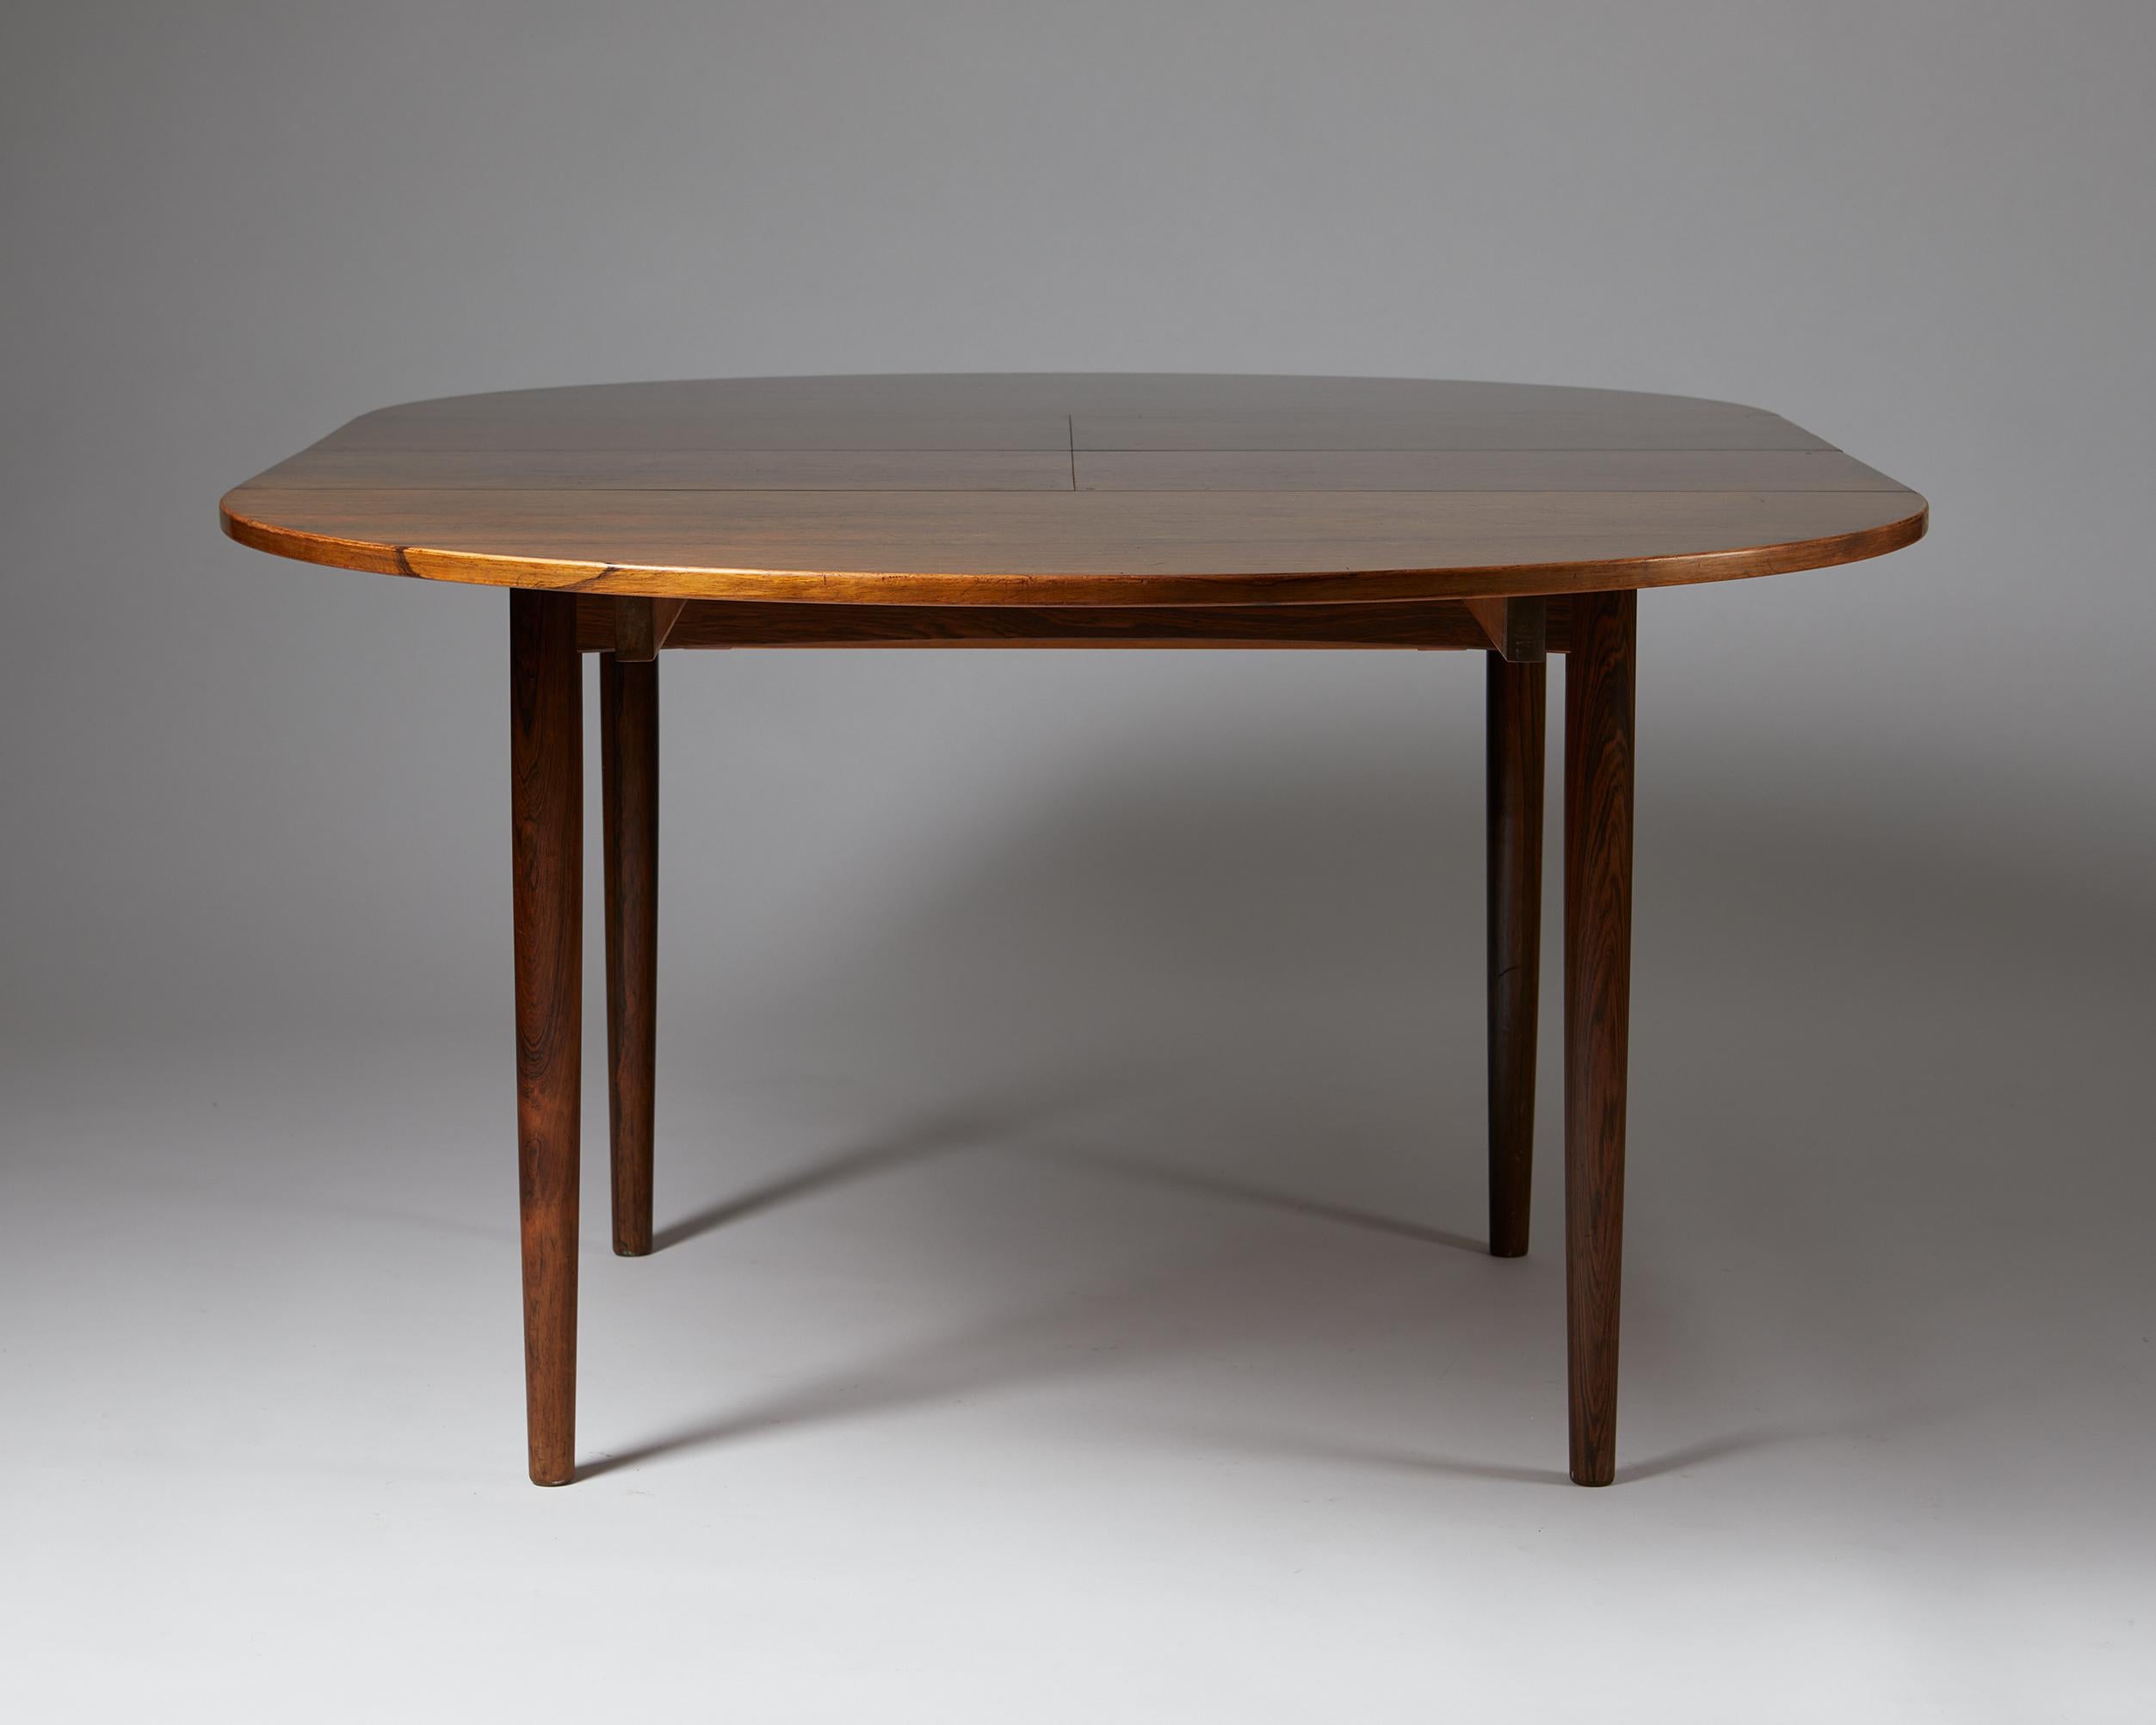 Rosewood Dining Table Designed by Jörgen Clausen for Brande Mobelindustri